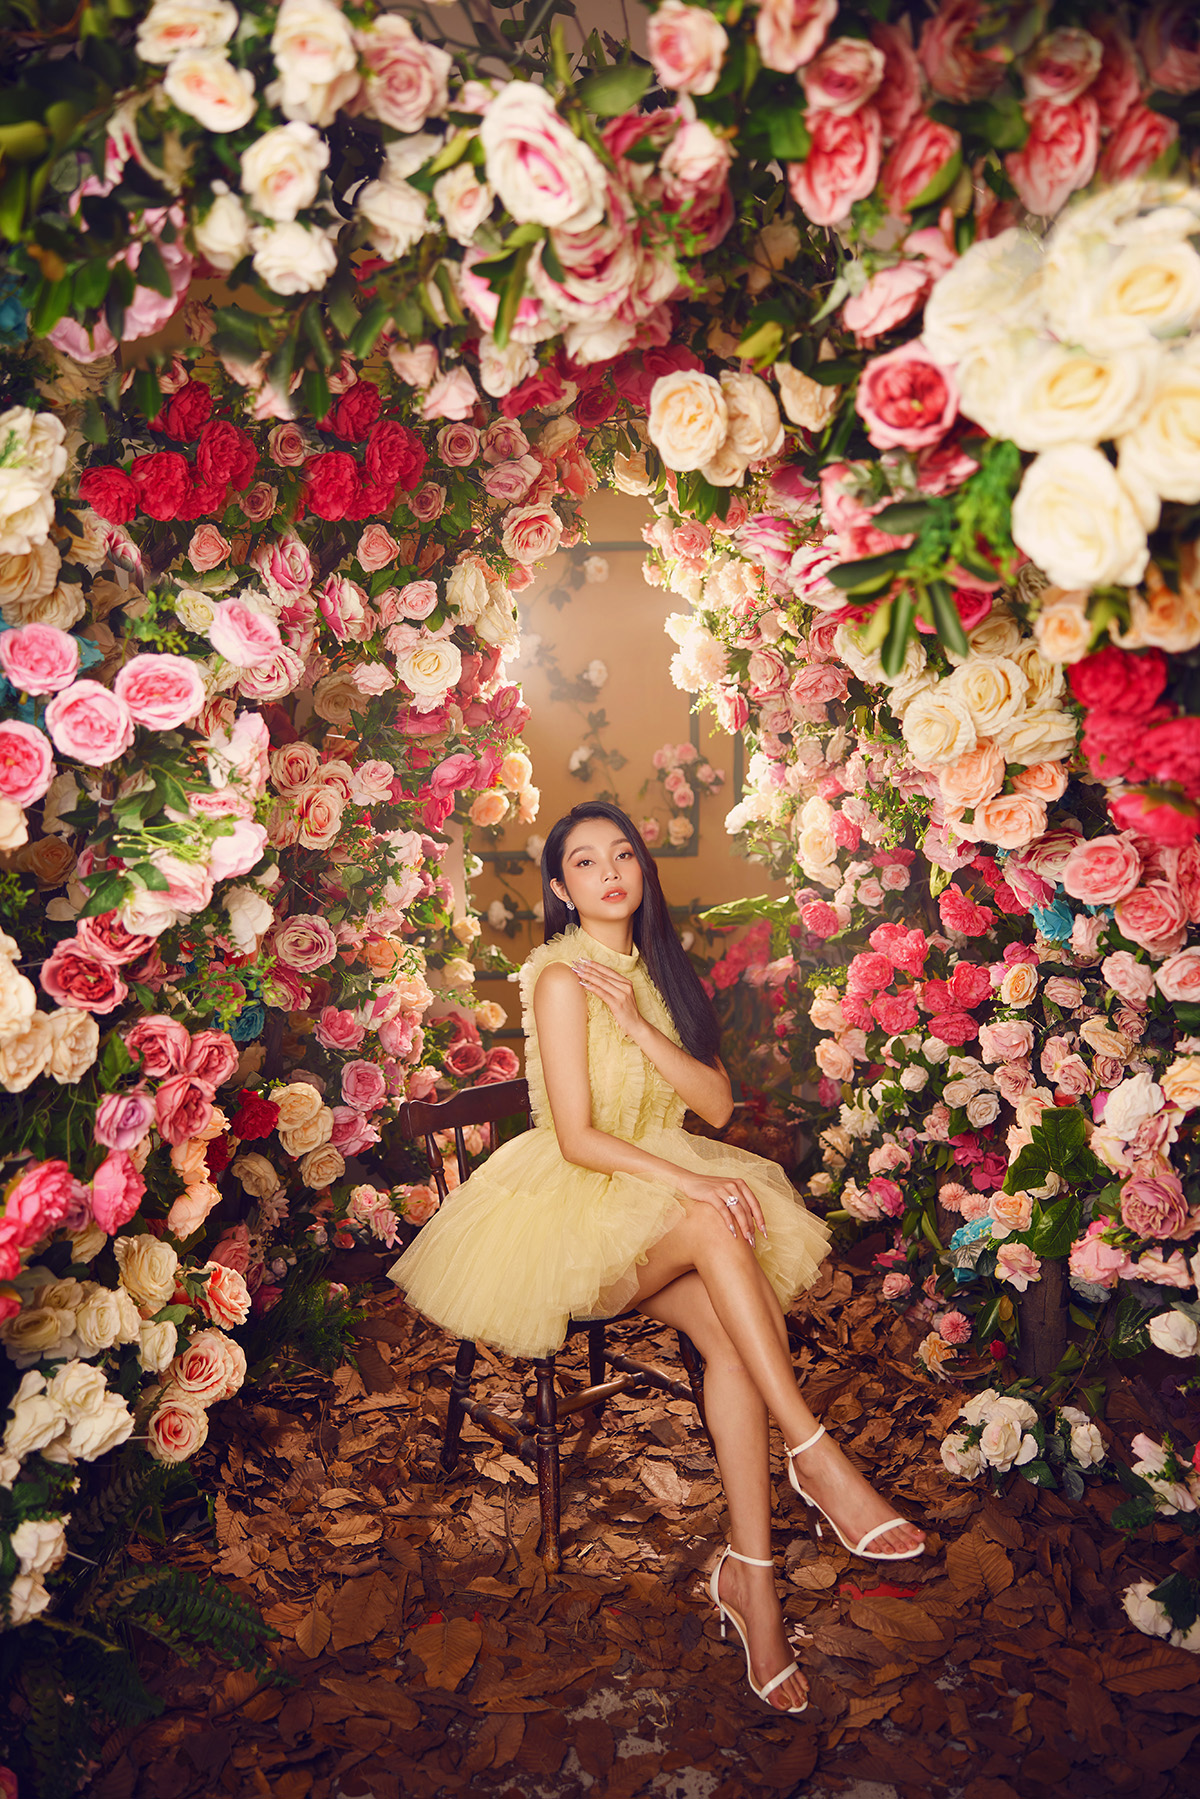 Lâm Thu Hồng khai thác triệt để nét quyến rũ, hoá thân thành công chúa trong vườn hoa